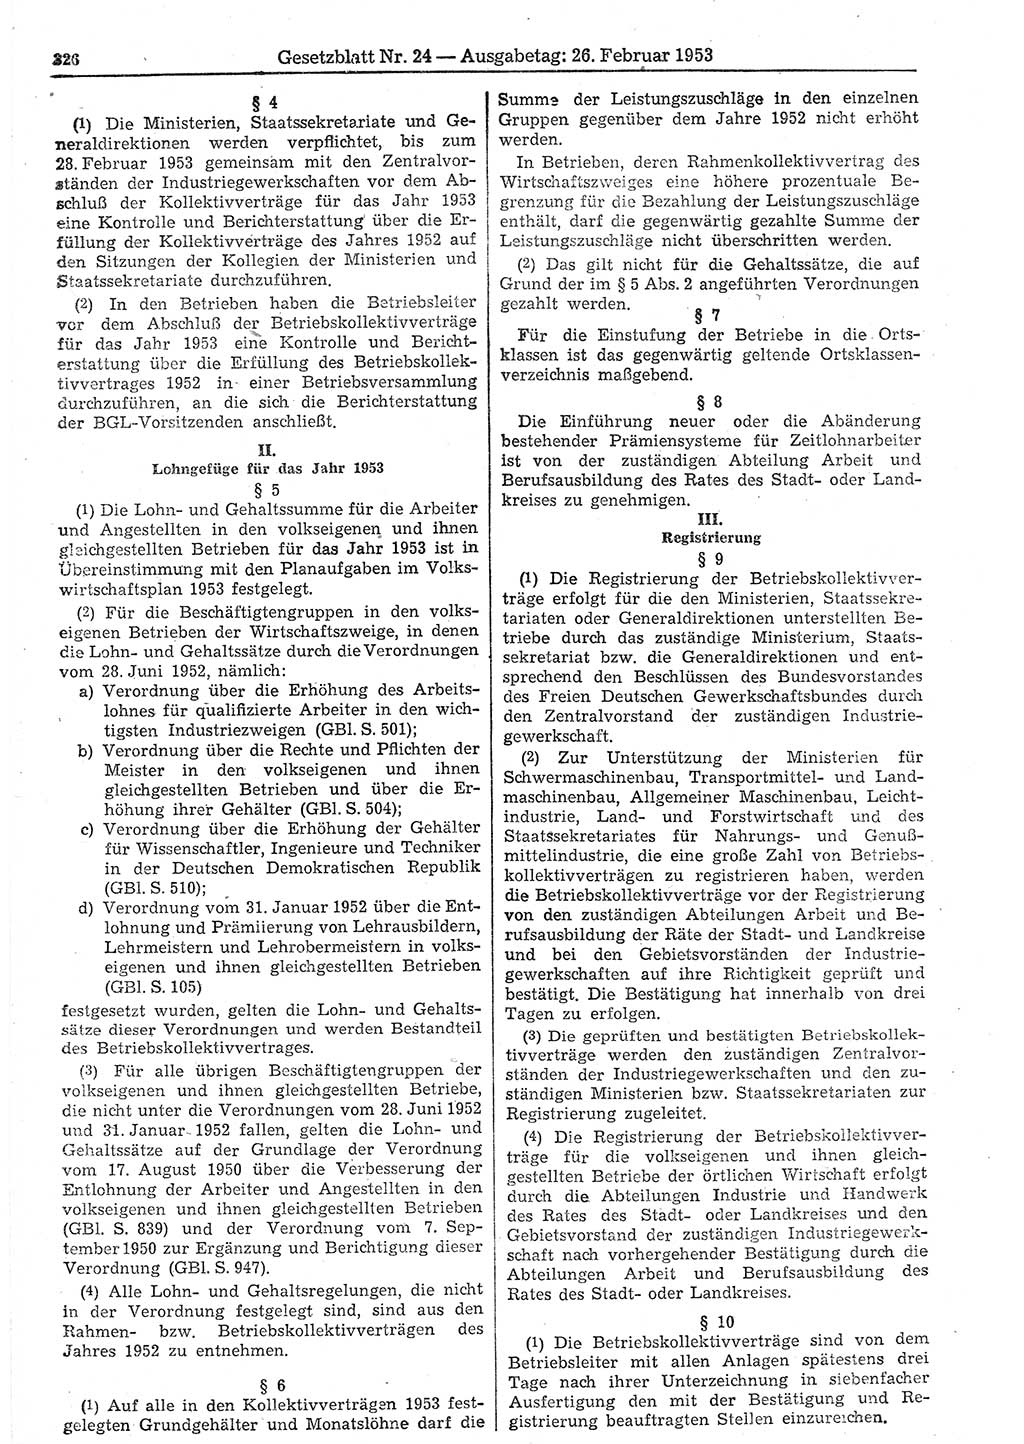 Gesetzblatt (GBl.) der Deutschen Demokratischen Republik (DDR) 1953, Seite 326 (GBl. DDR 1953, S. 326)